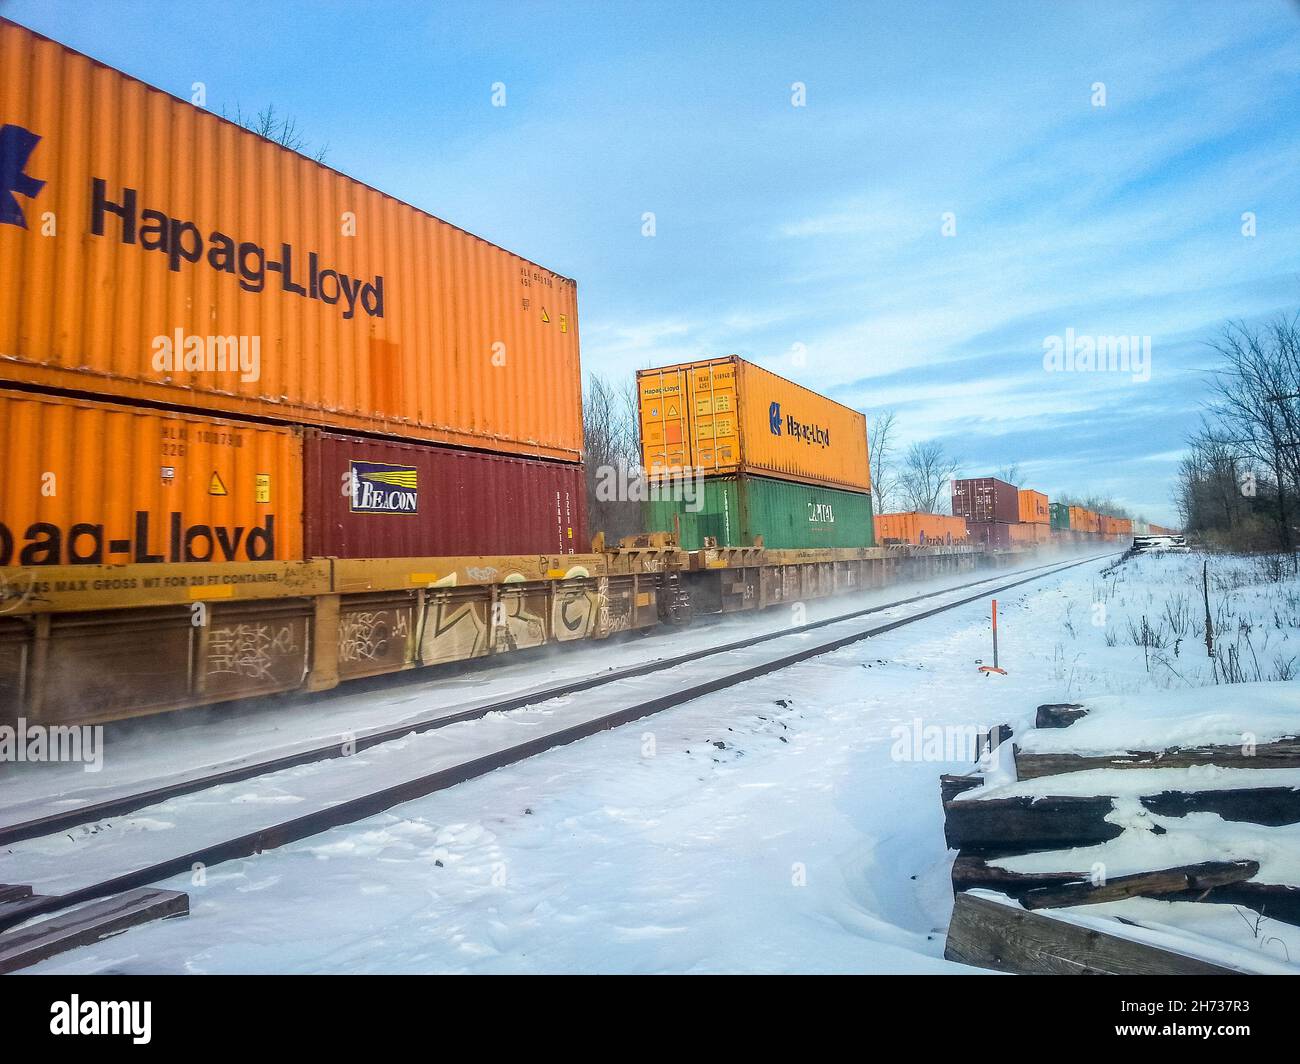 Vue en angle des wagons sur le côté gauche de la photo, avec des wagons-cases orange, rouge et vert qui se déplacent sur la voie ferrée lors d'une journée d'hiver ensoleillée, enneigée. Banque D'Images